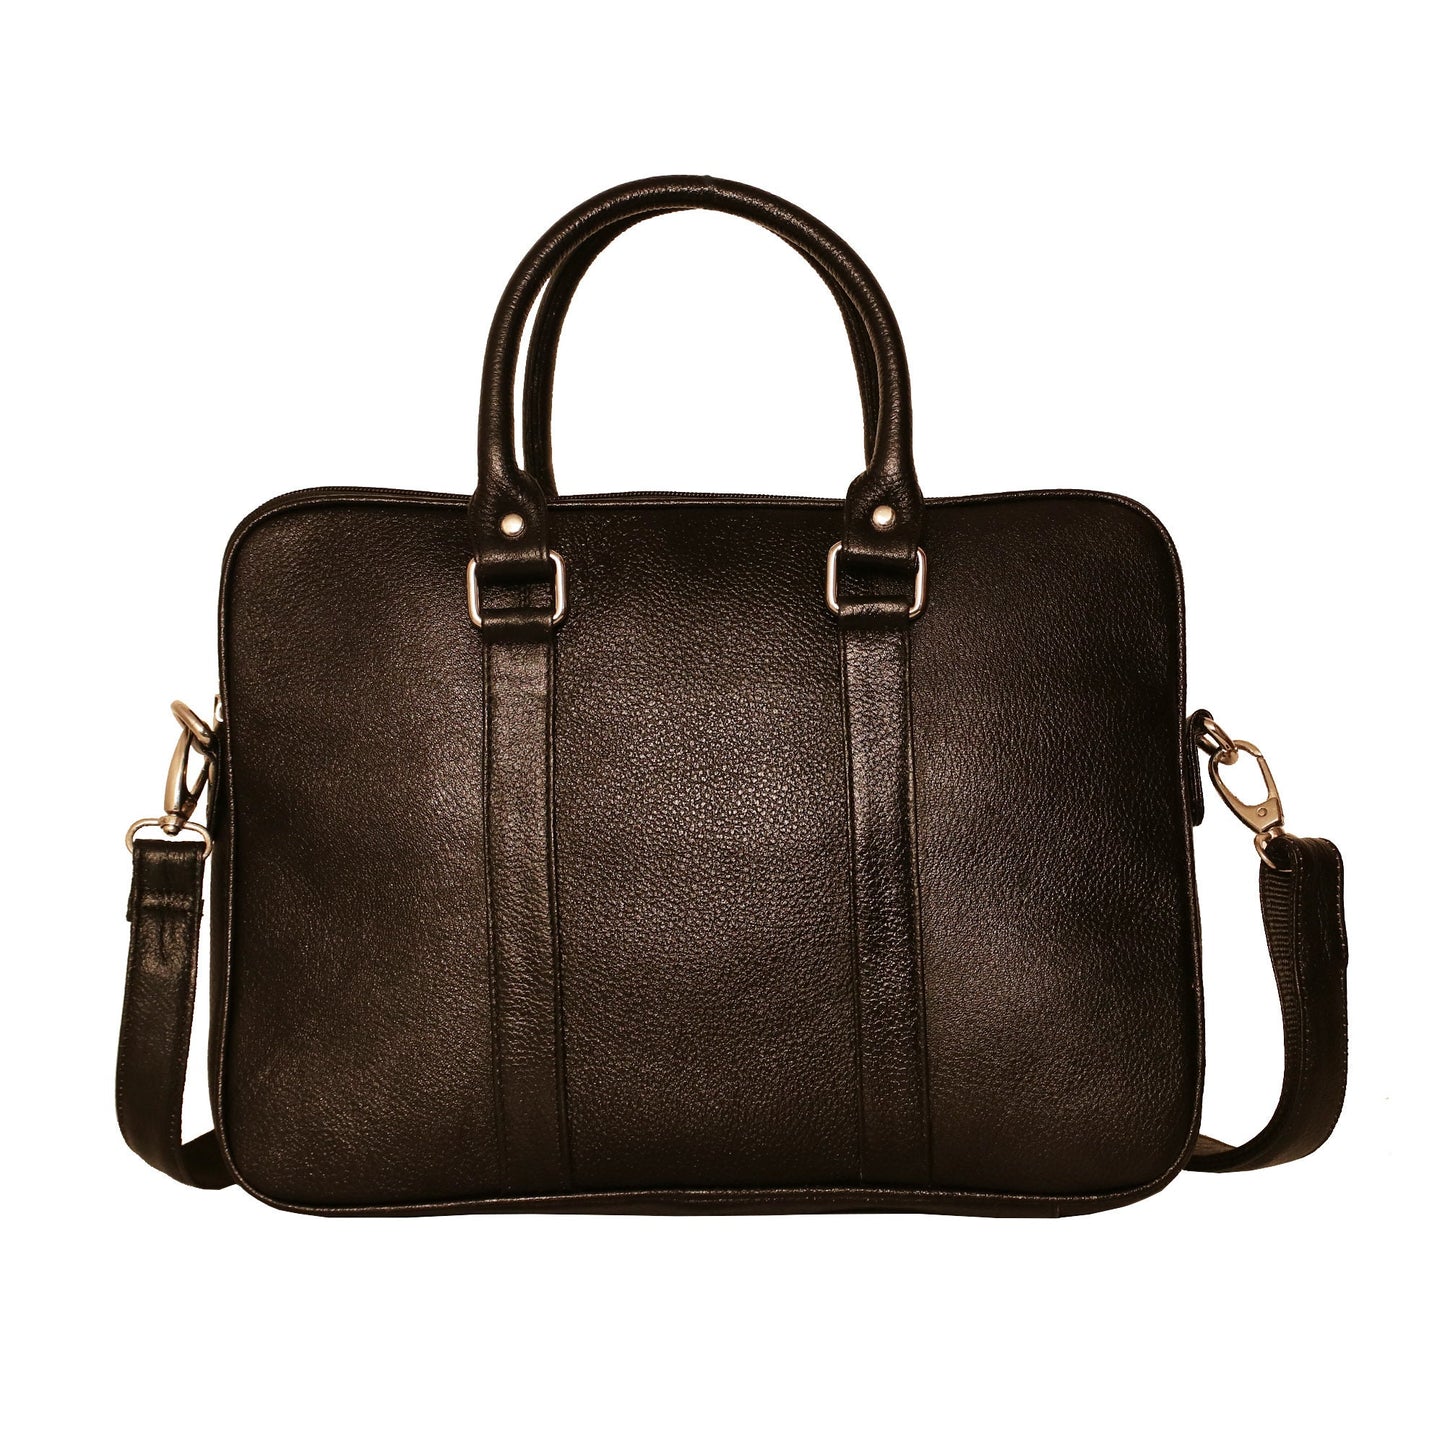 LINDSEY STREET Leather MacBook Bag, 14 Inch Laptop Bag without Sleeves, Leather Messenger Bag, Office Bag, Men's Shoulder Bag